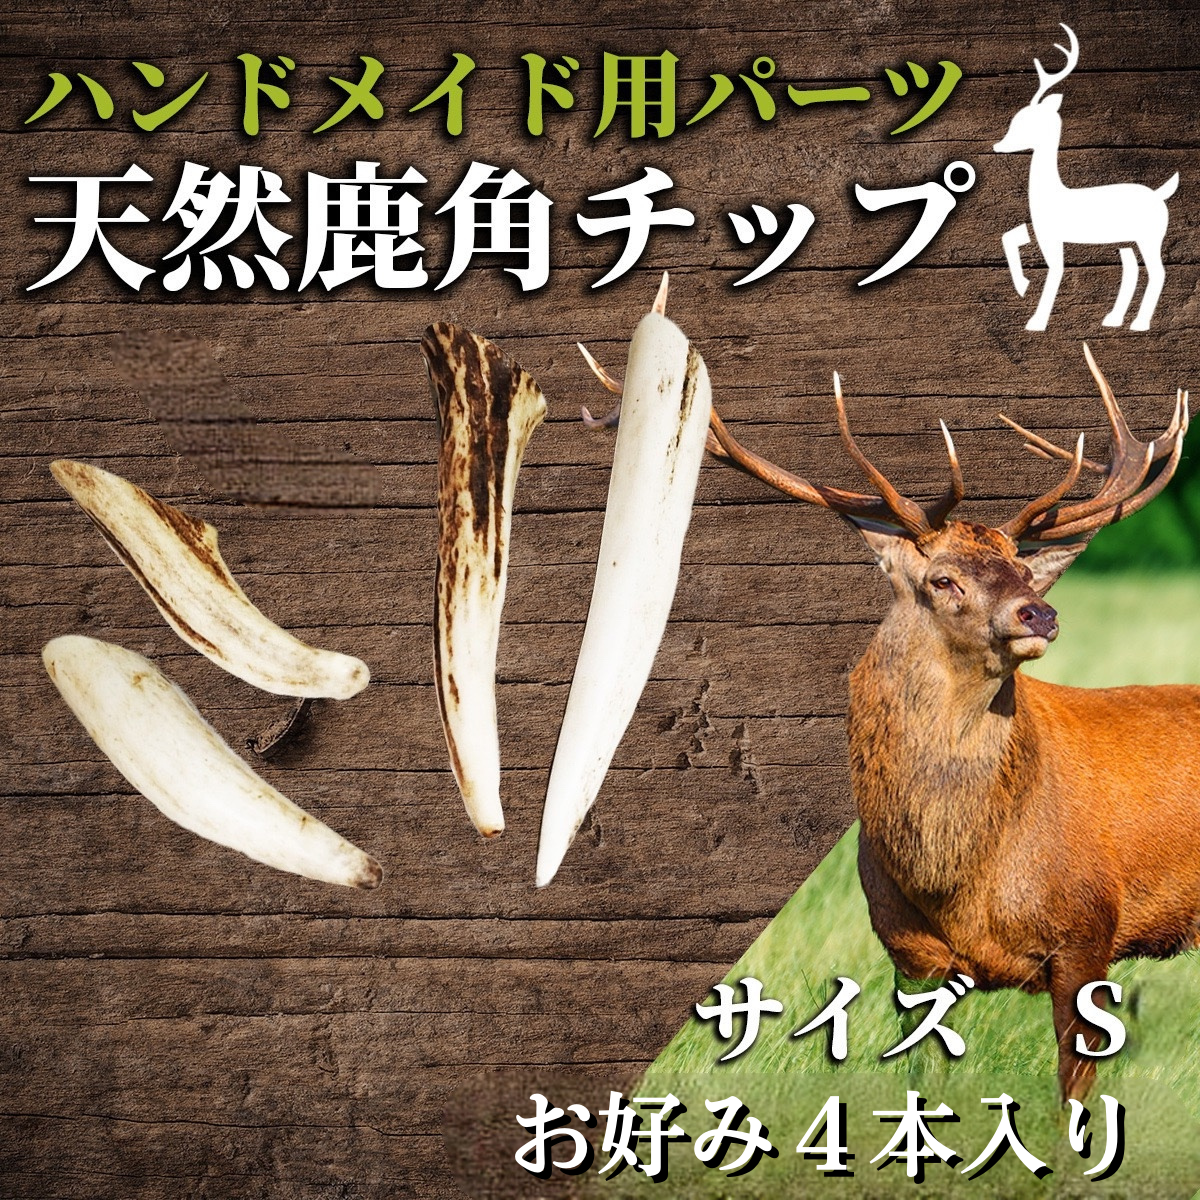 日本製造 エゾ鹿 つの 70cm - インテリア小物